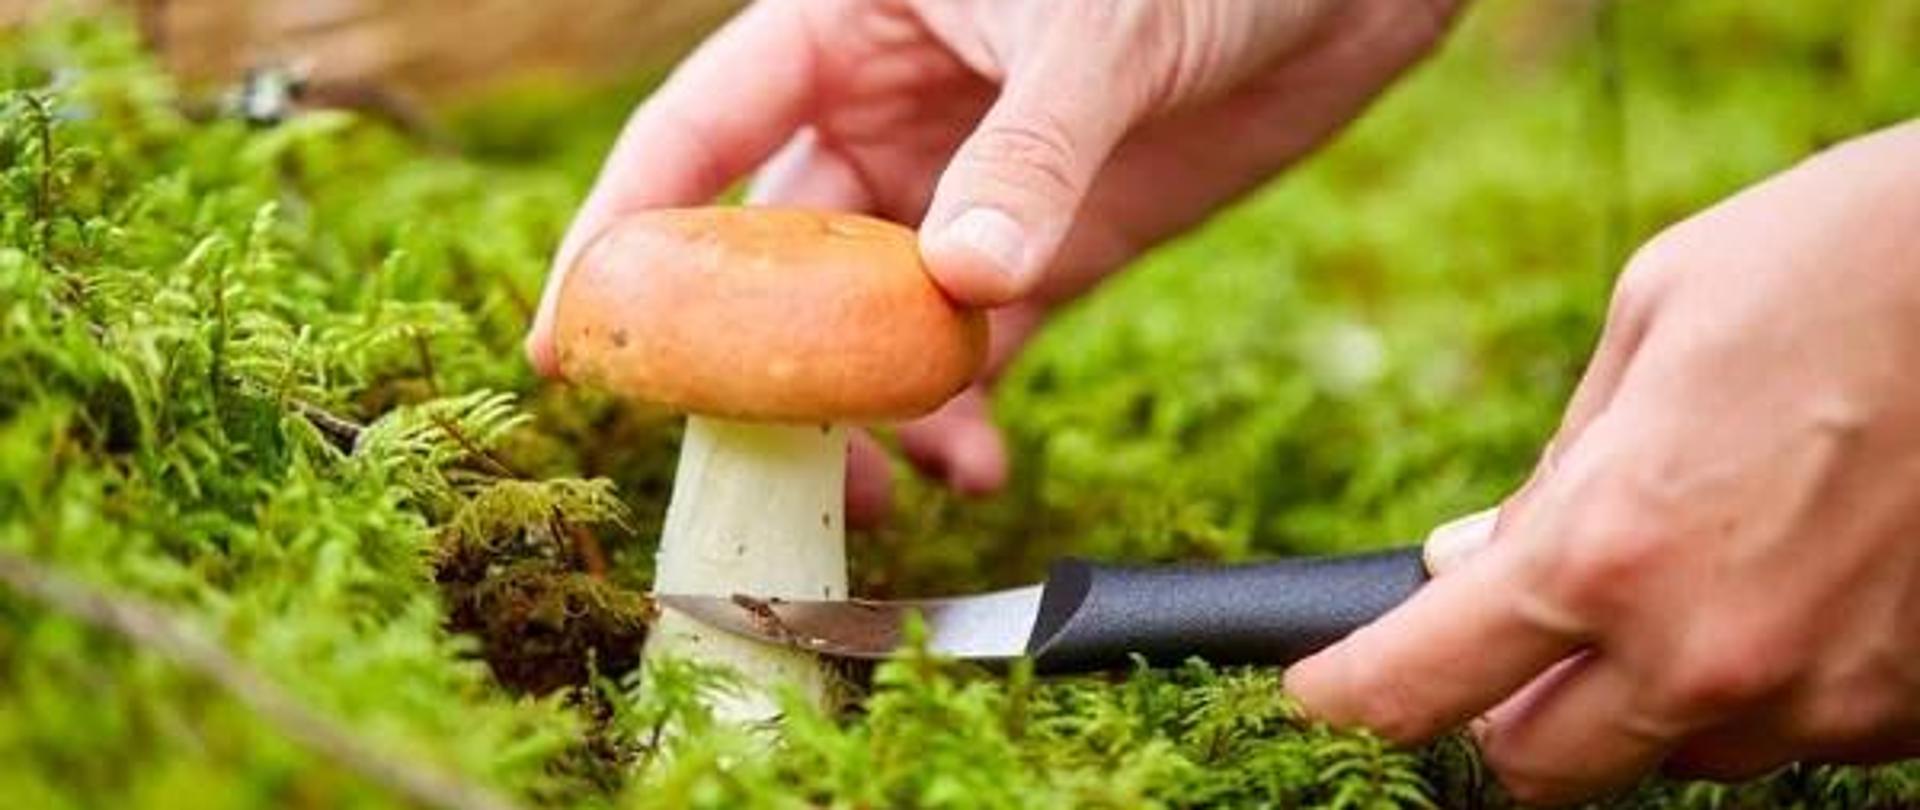 Podcinanie grzyba za pomocą nożyka